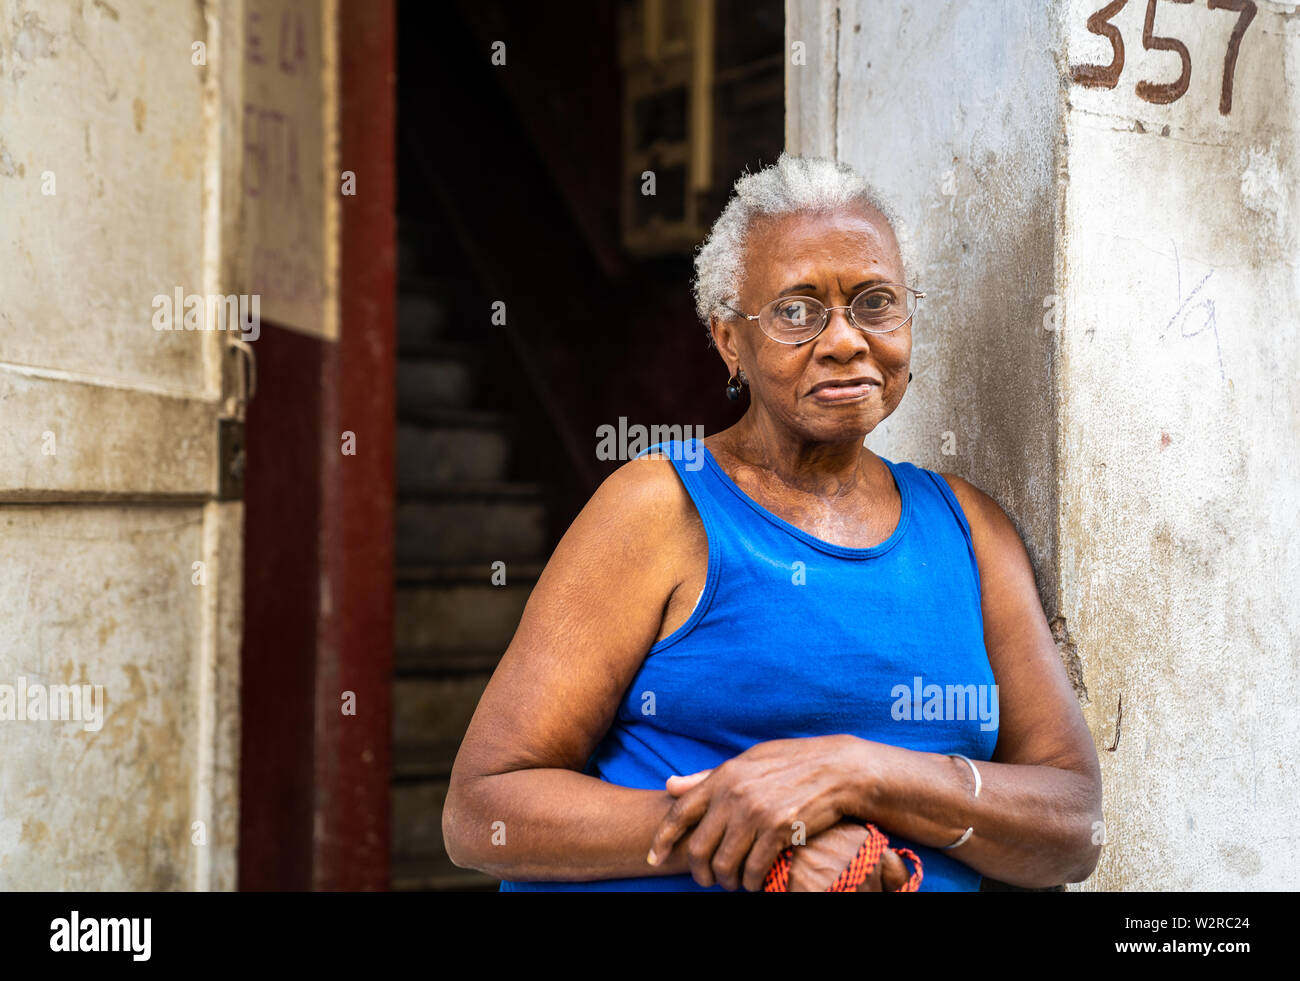 Vecchia Havana, Cuba - Gennaio 2, 2019: un senior Afro-cubano sta femmina al di fuori del suo appartamento casa nella Vecchia Havana, Cuba. Foto Stock